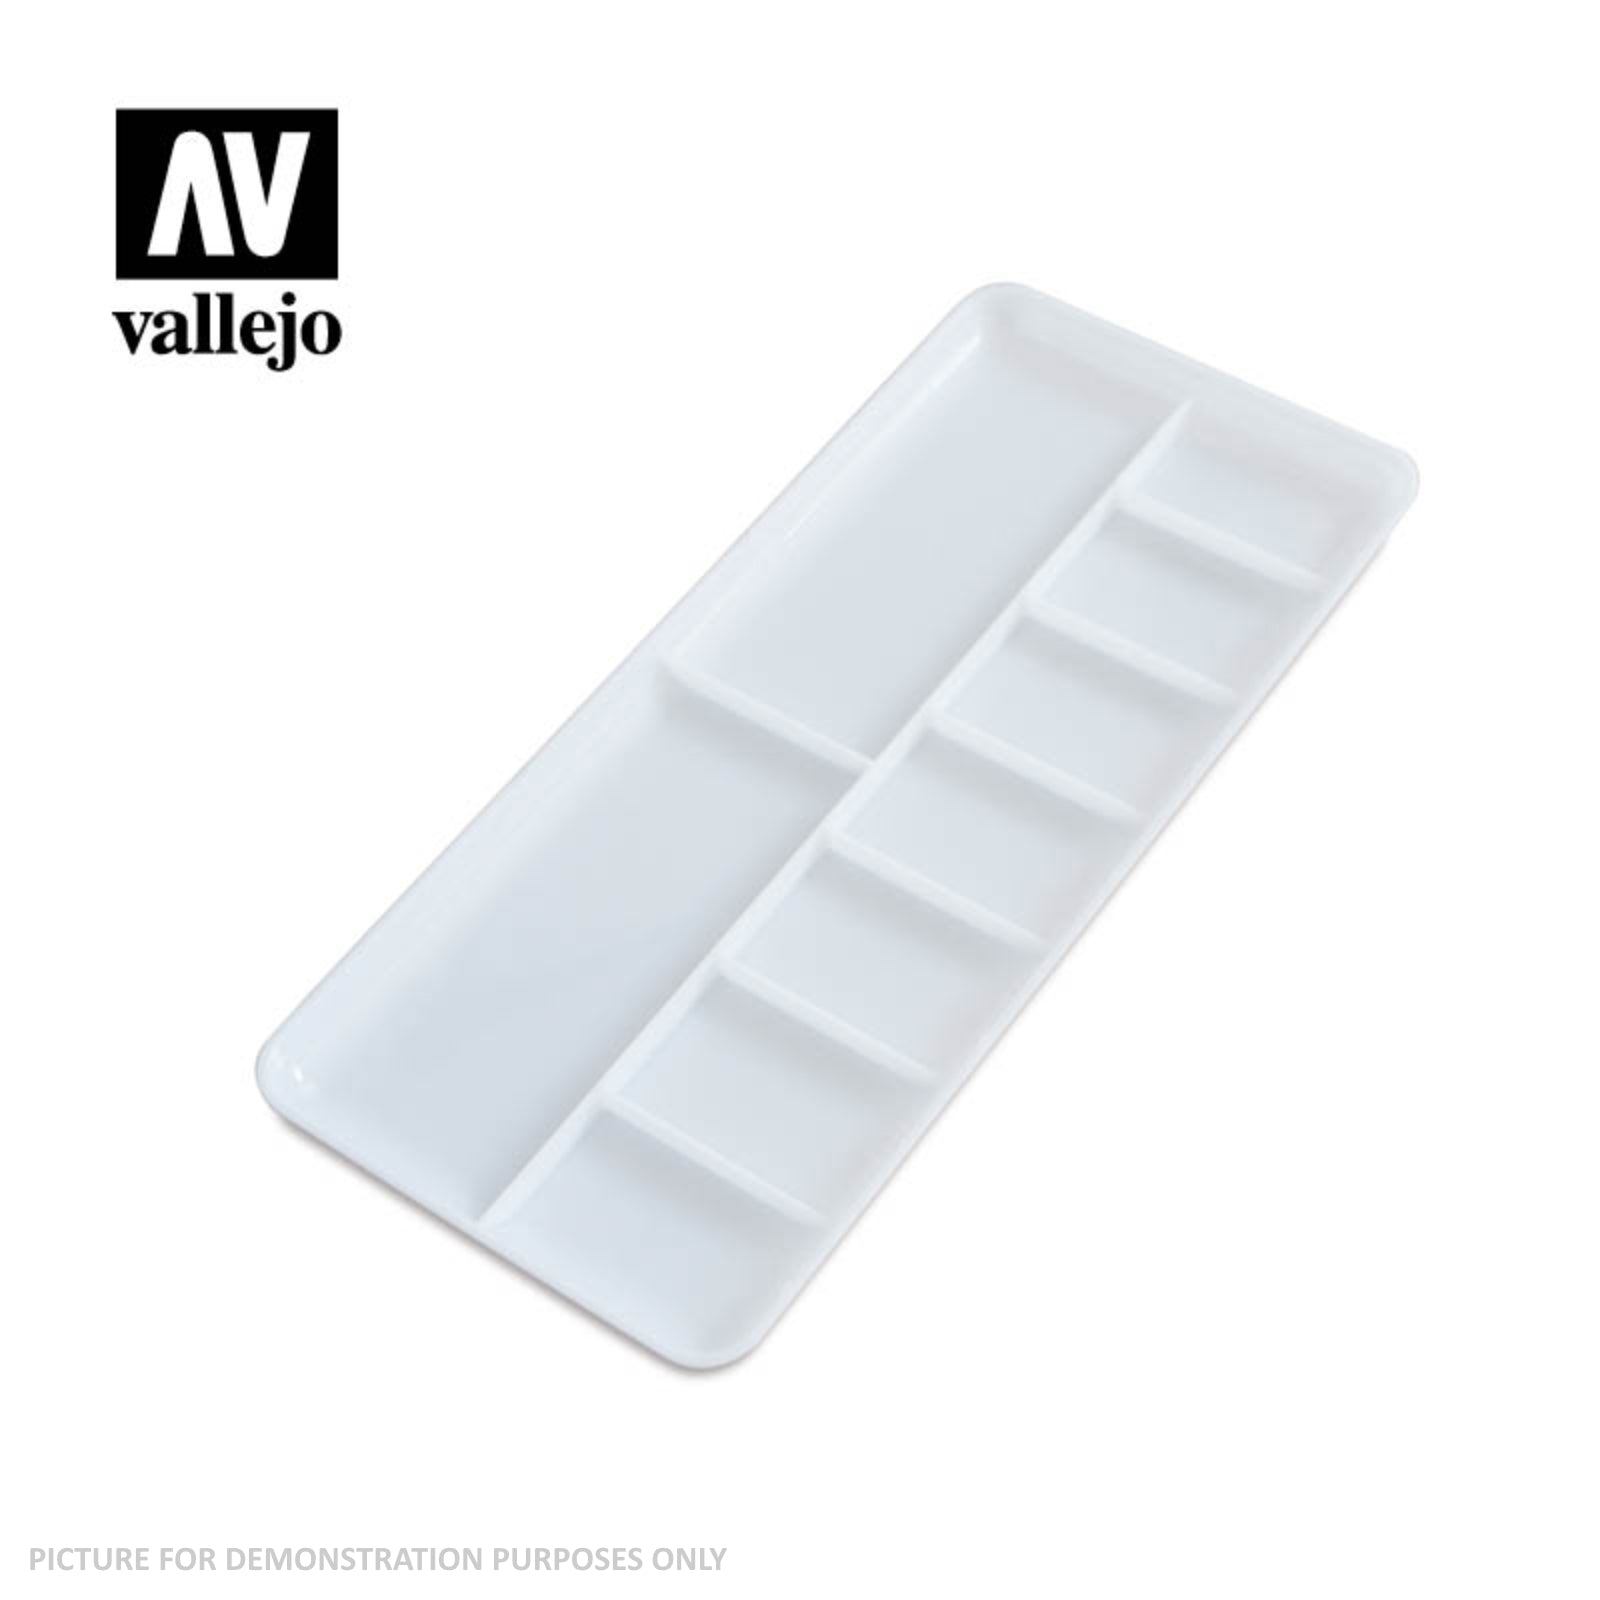 Vallejo Accessories - Rectangular Palette 18x8x5cm